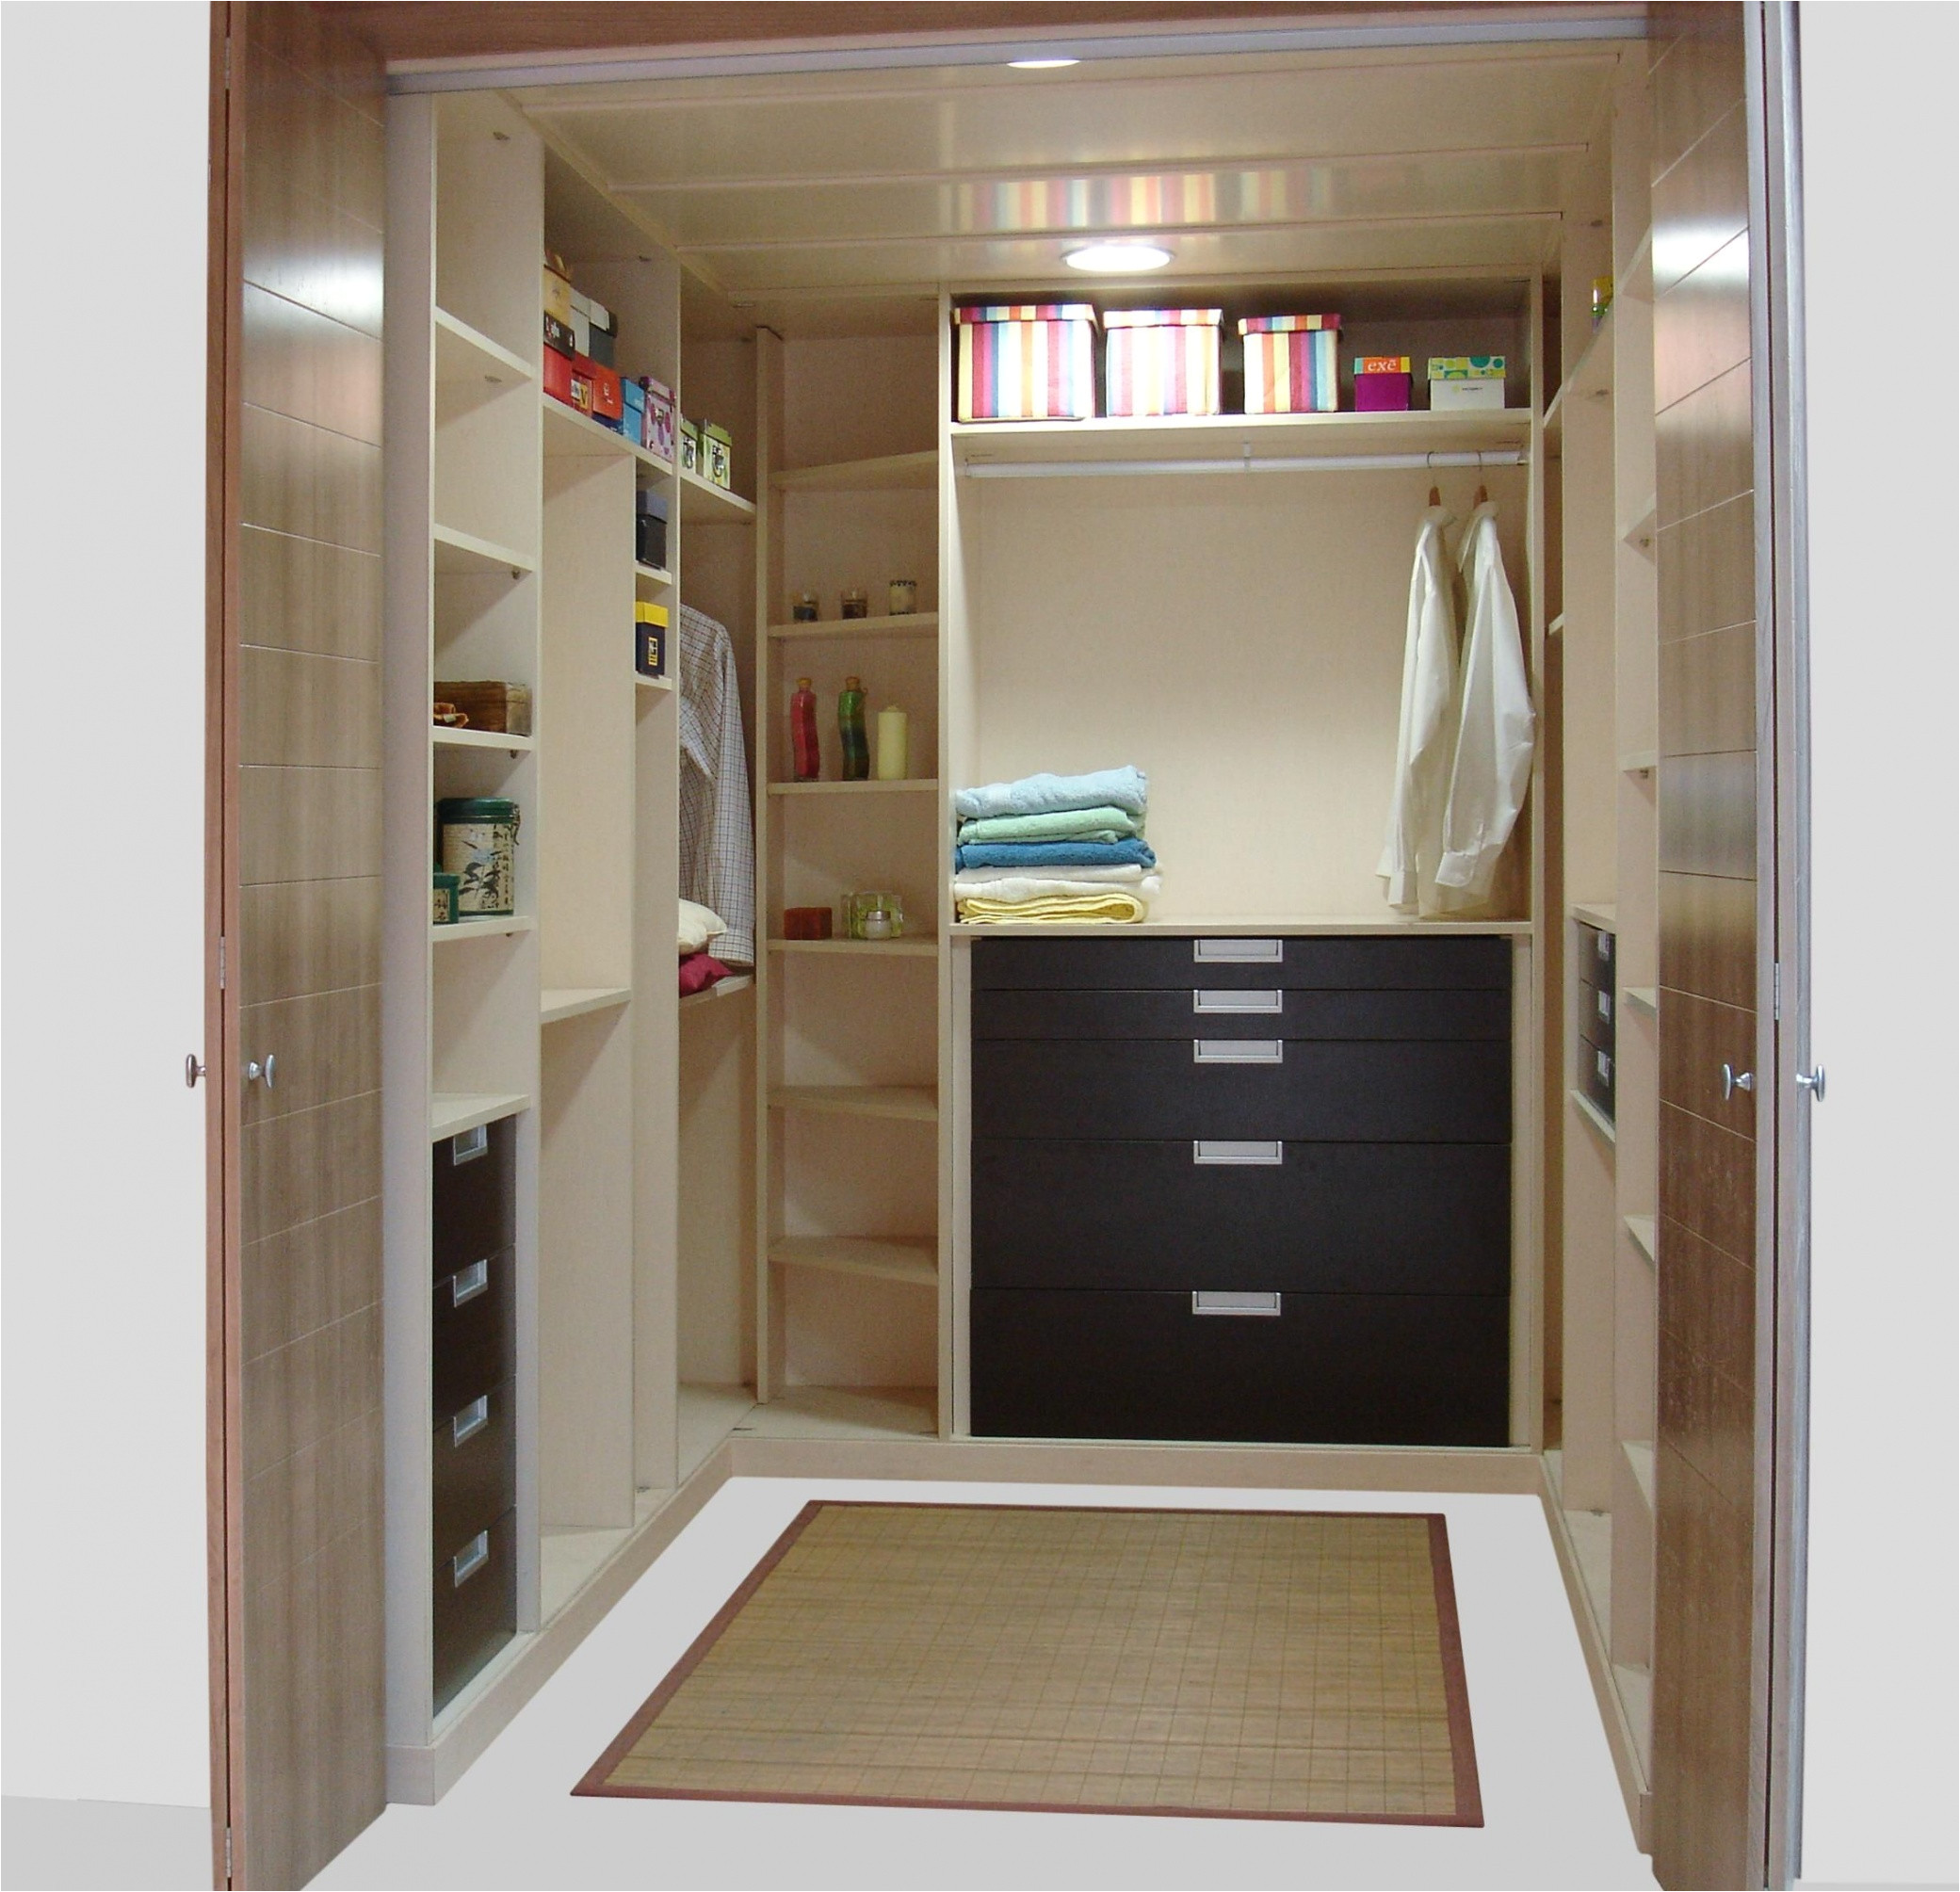 full size of modelos closets modernos en madera empotrados para recamaras pequenas closet cemento cuartos pequenos